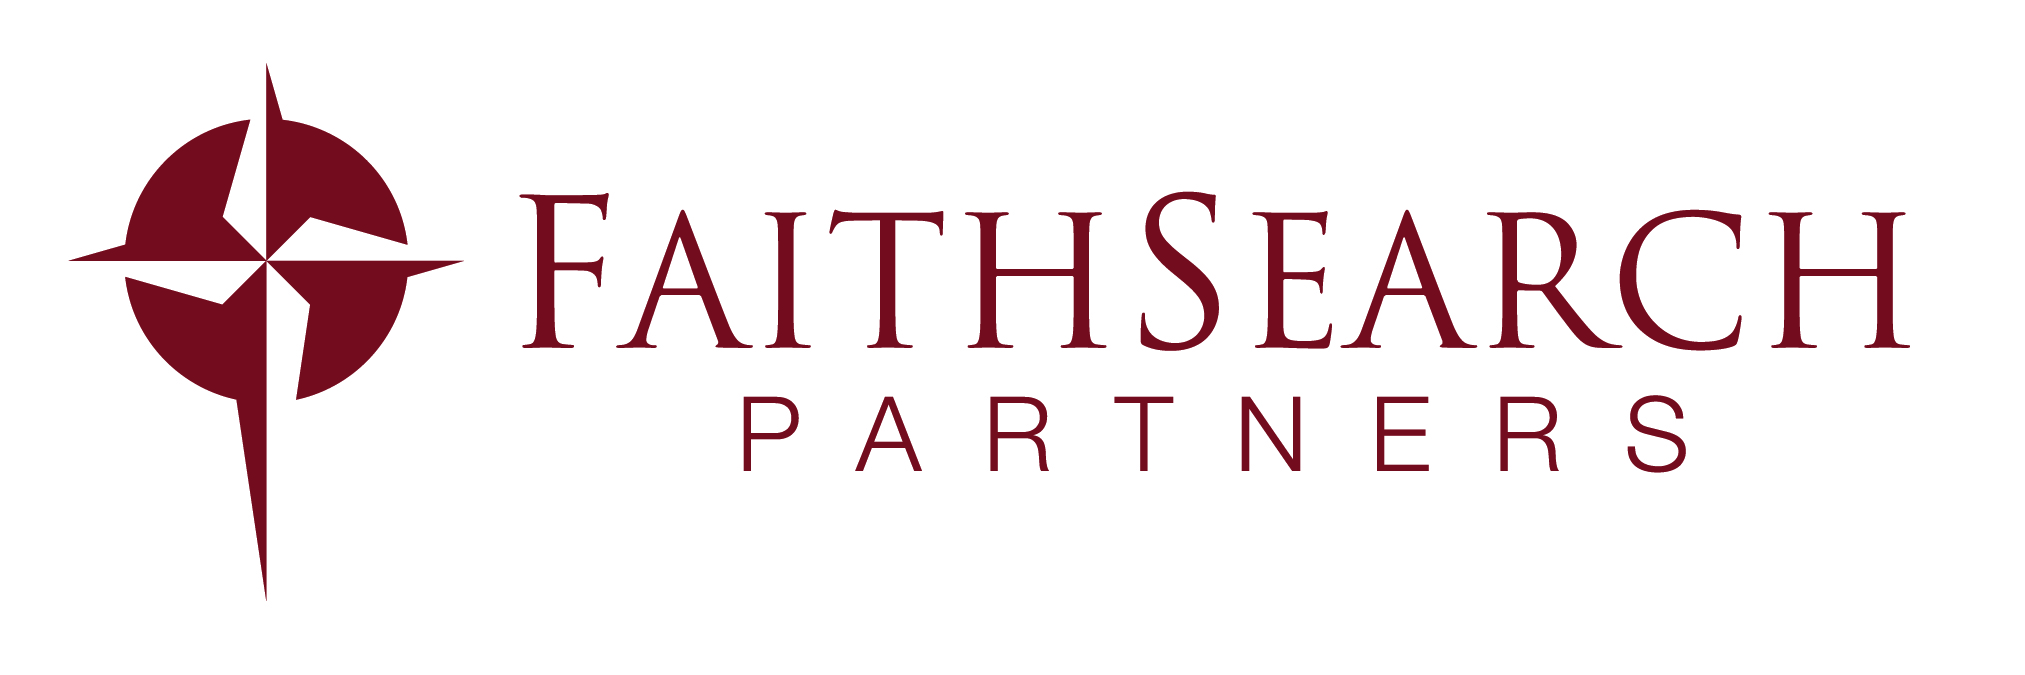 Faith Search Partners